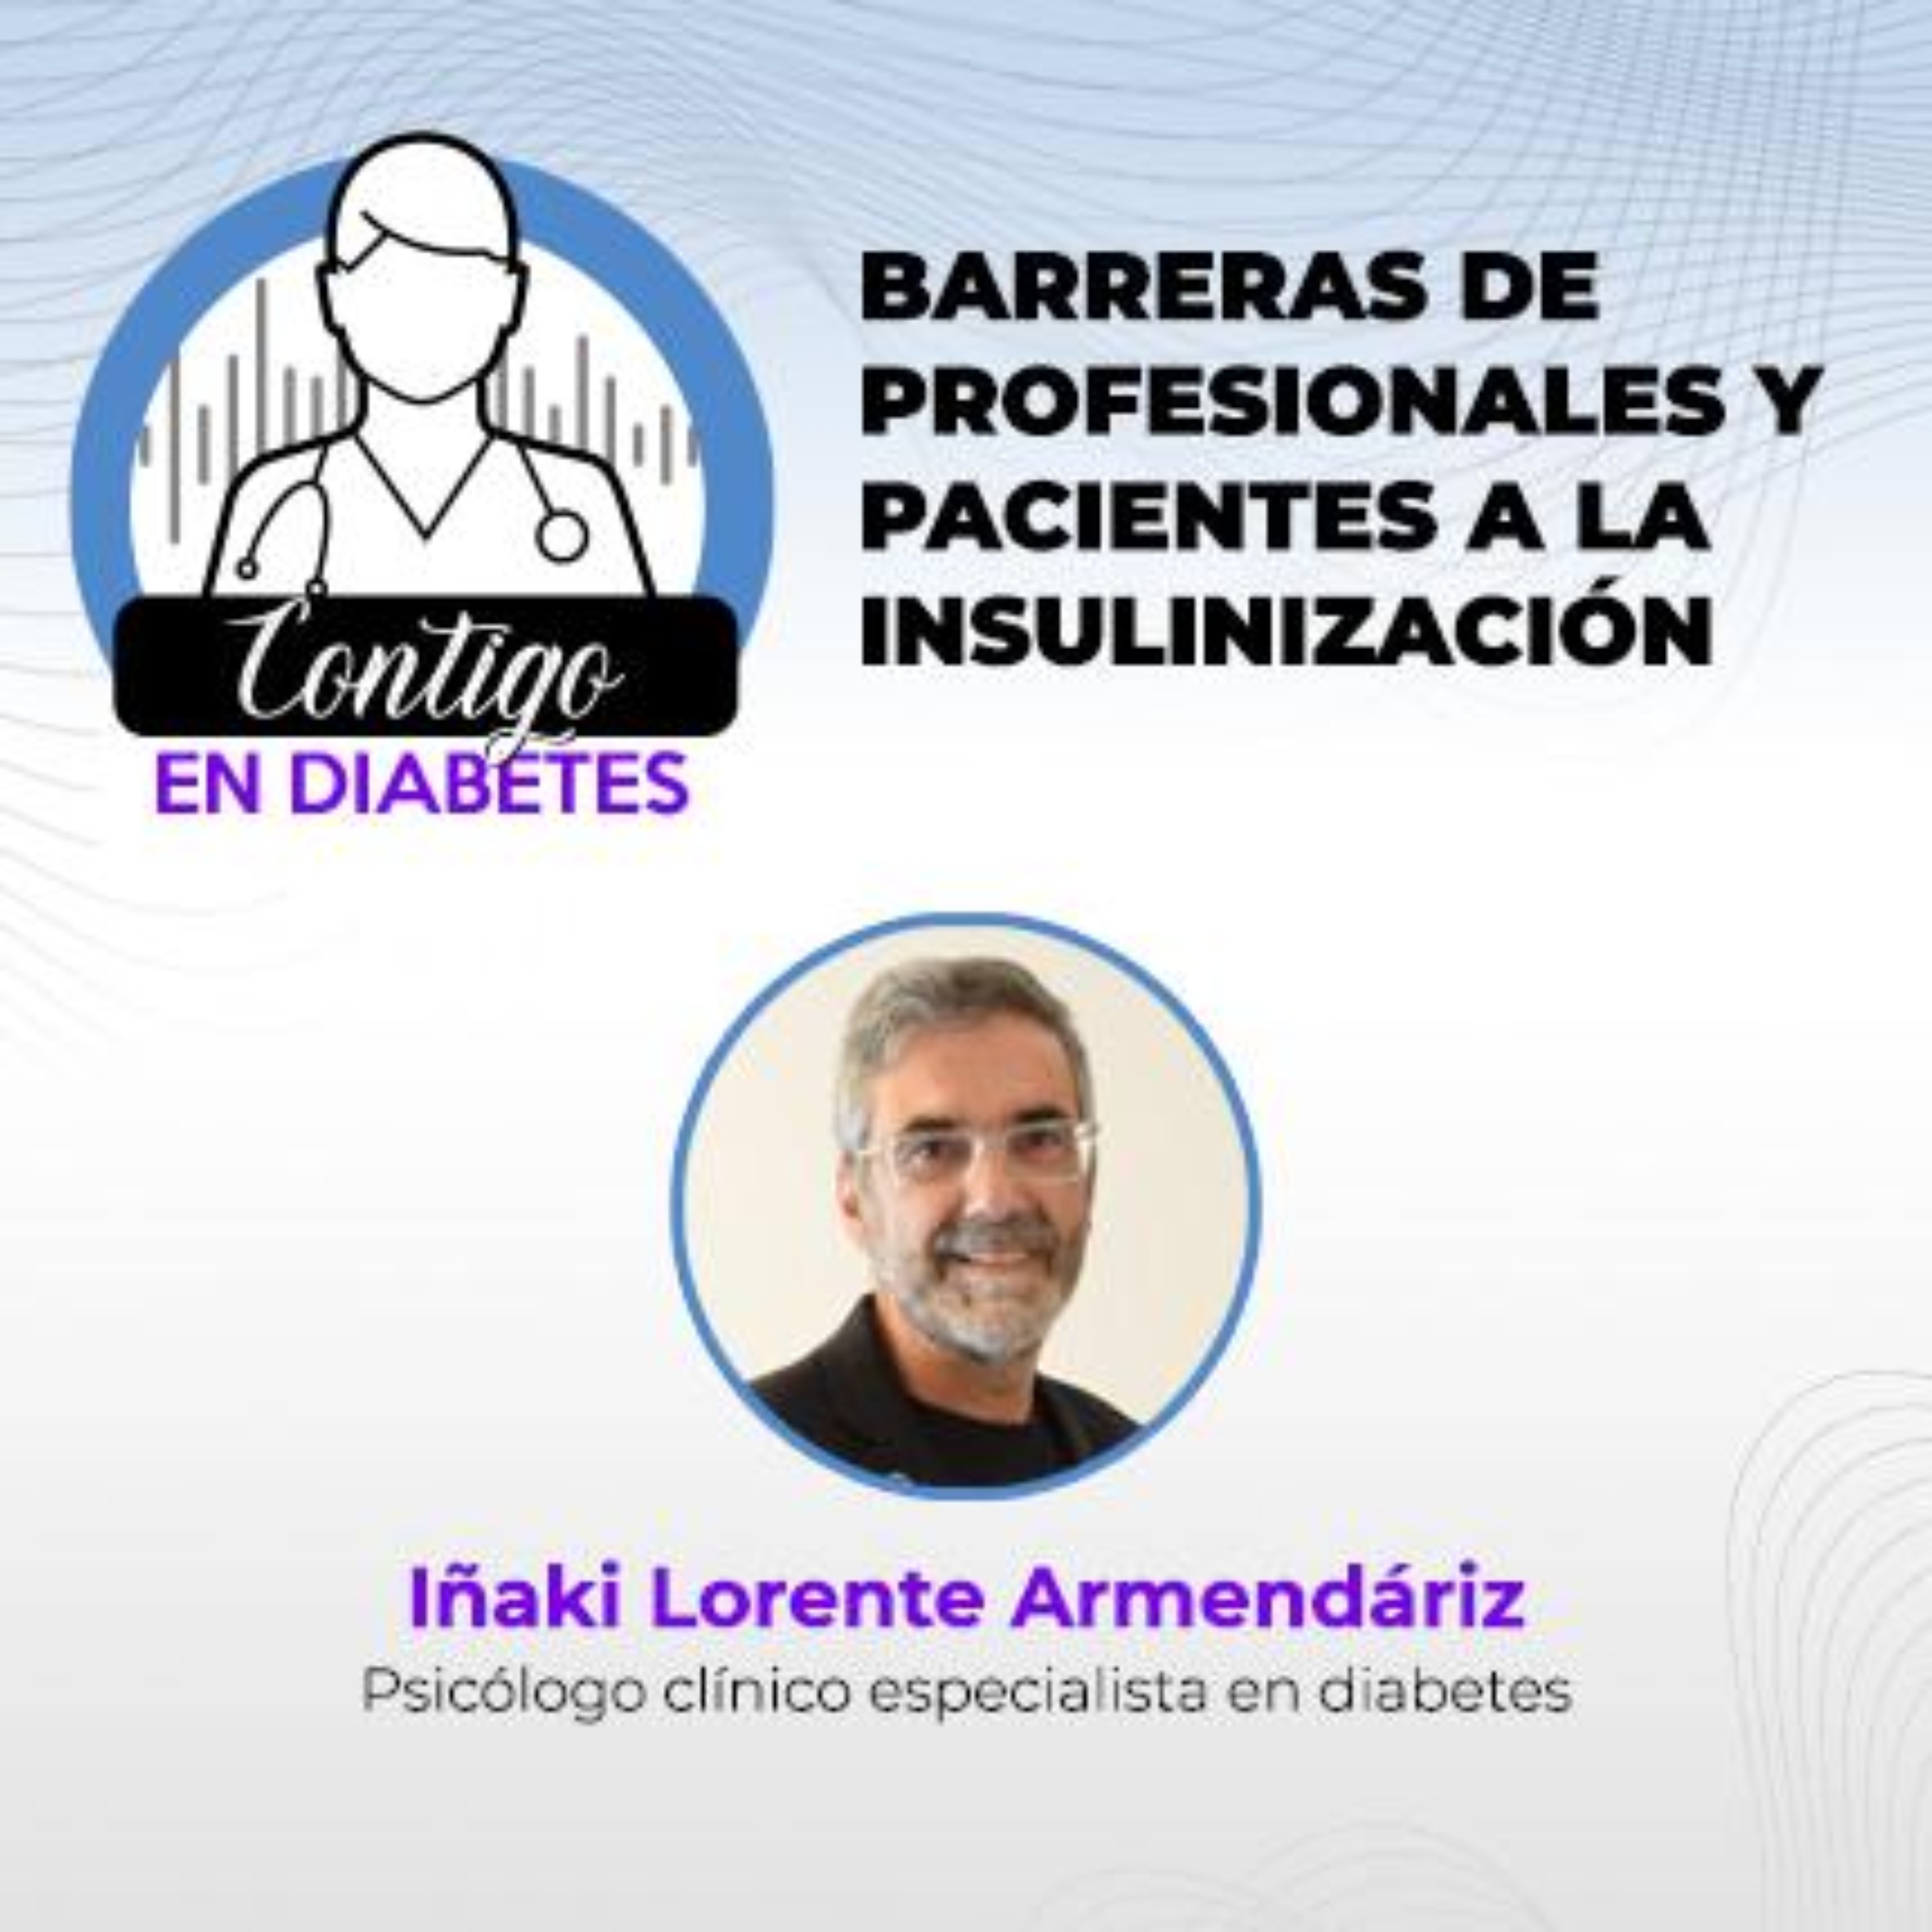 Barreras de profesionales y pacientes a la insulinización